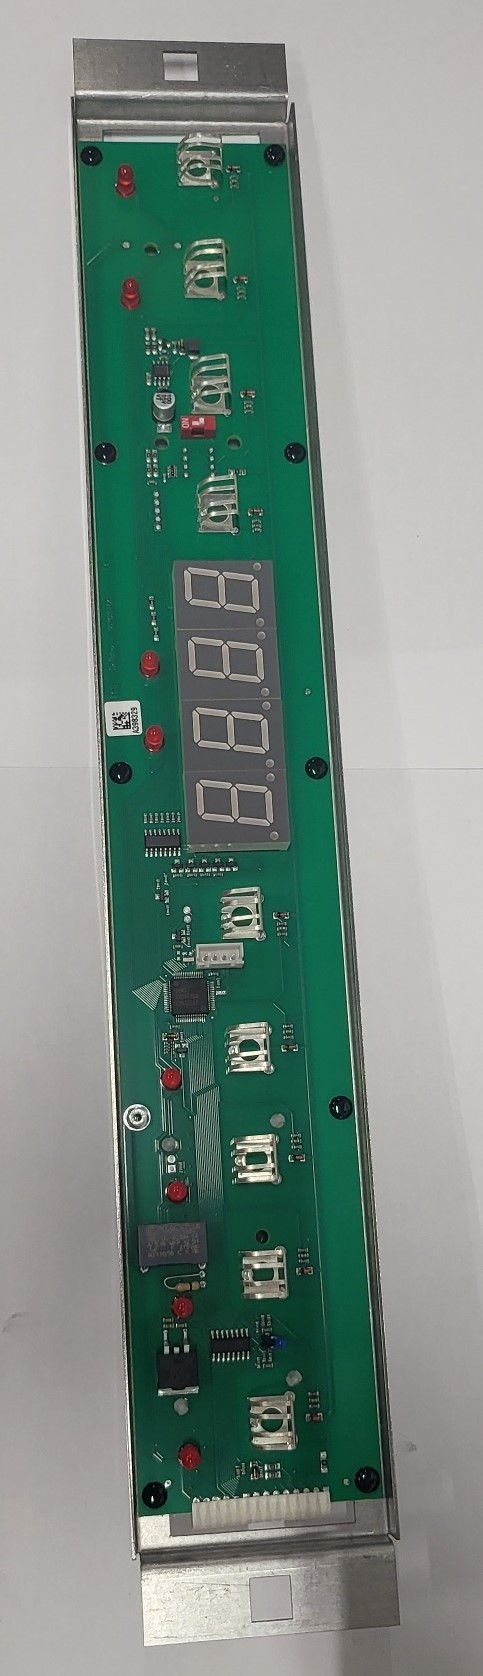 Giorik 6010115  ST30+40 PCB Main Control board